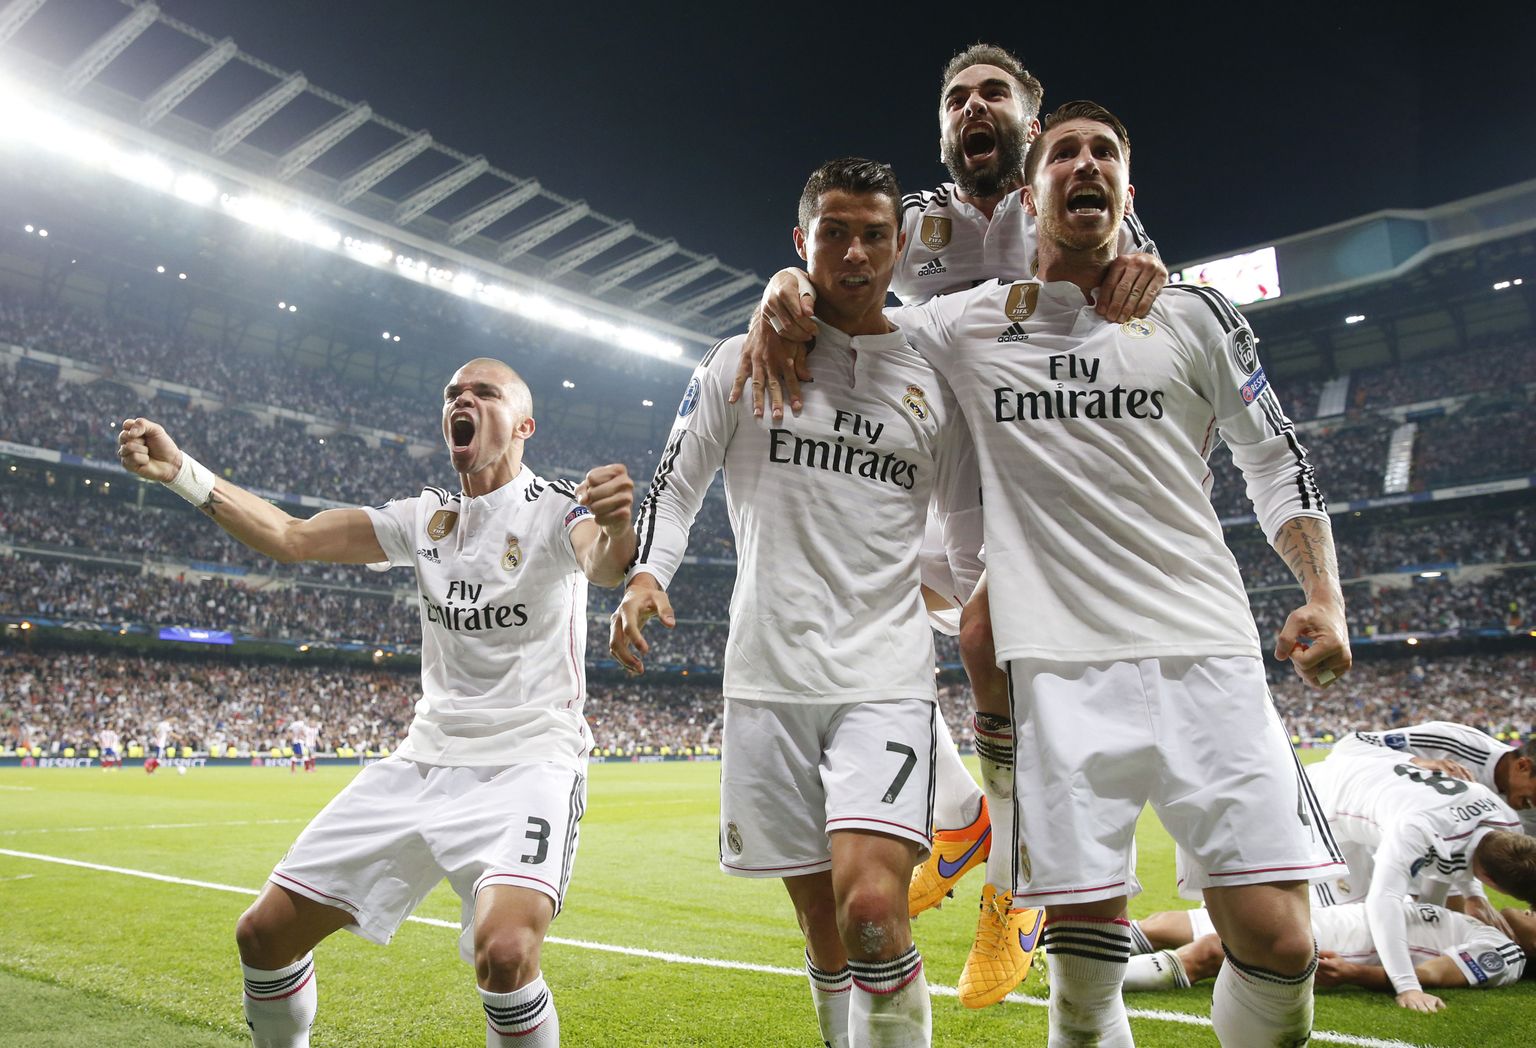 Madridi Reali tähtmängijad rõõmustamas järjekrodse värava üle. Real on Meistrite liiga võitnud koguni 10 korda.